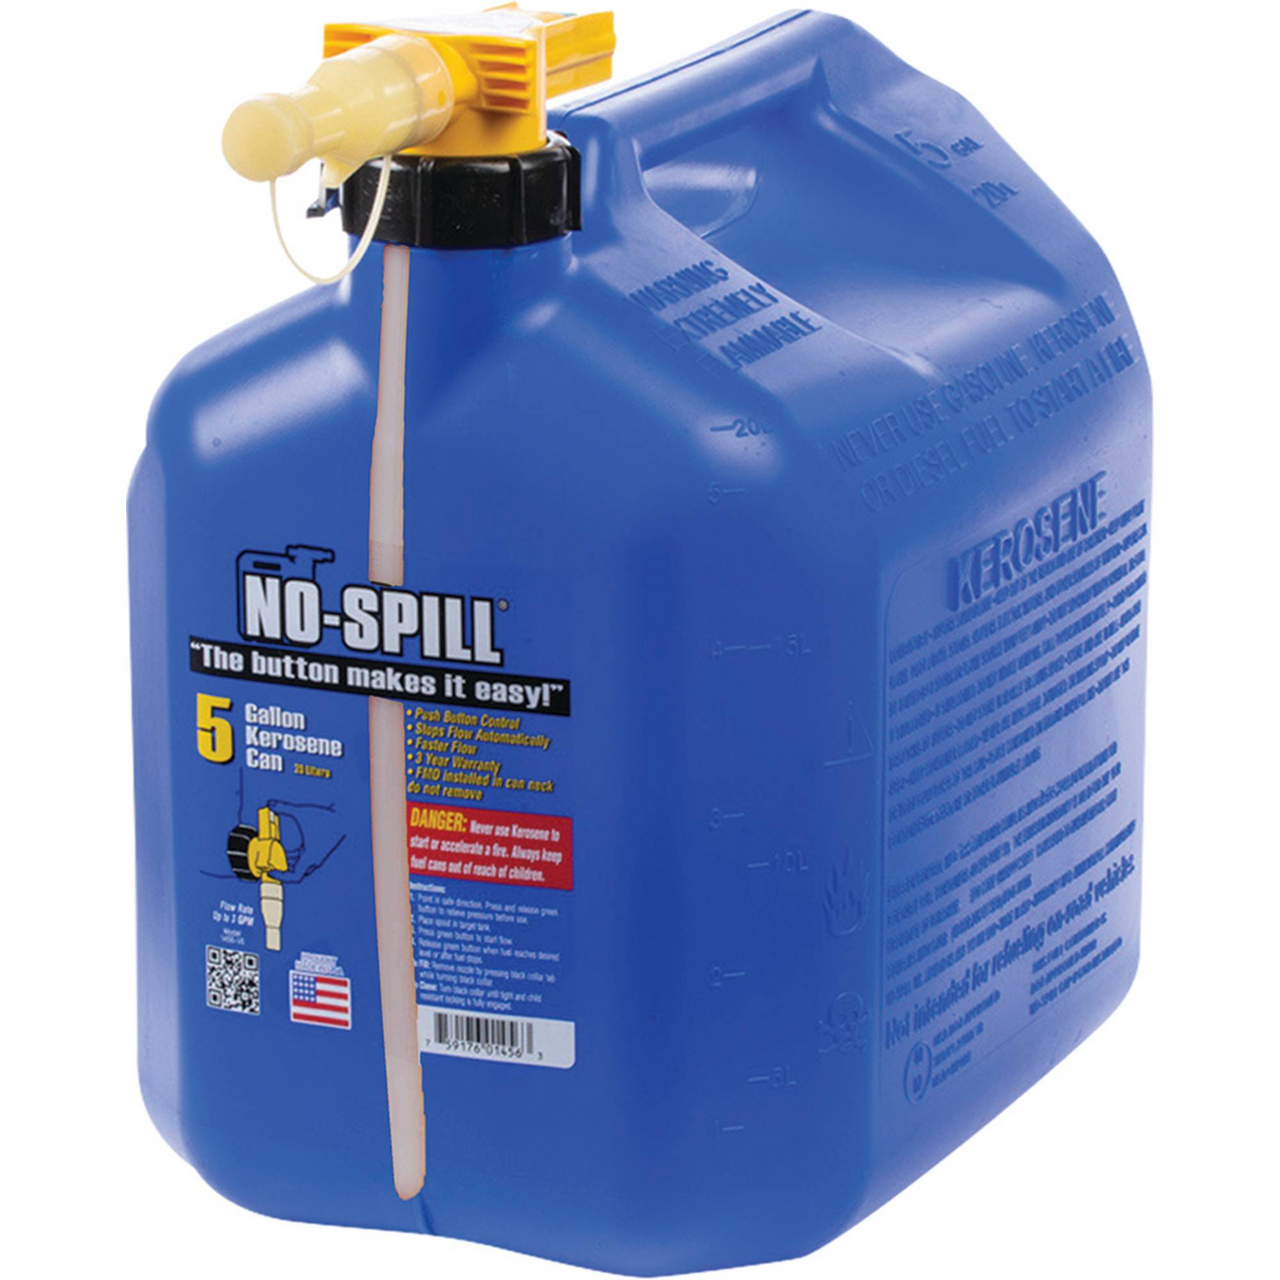 No-Spill 5 Gallon Kerosene Container